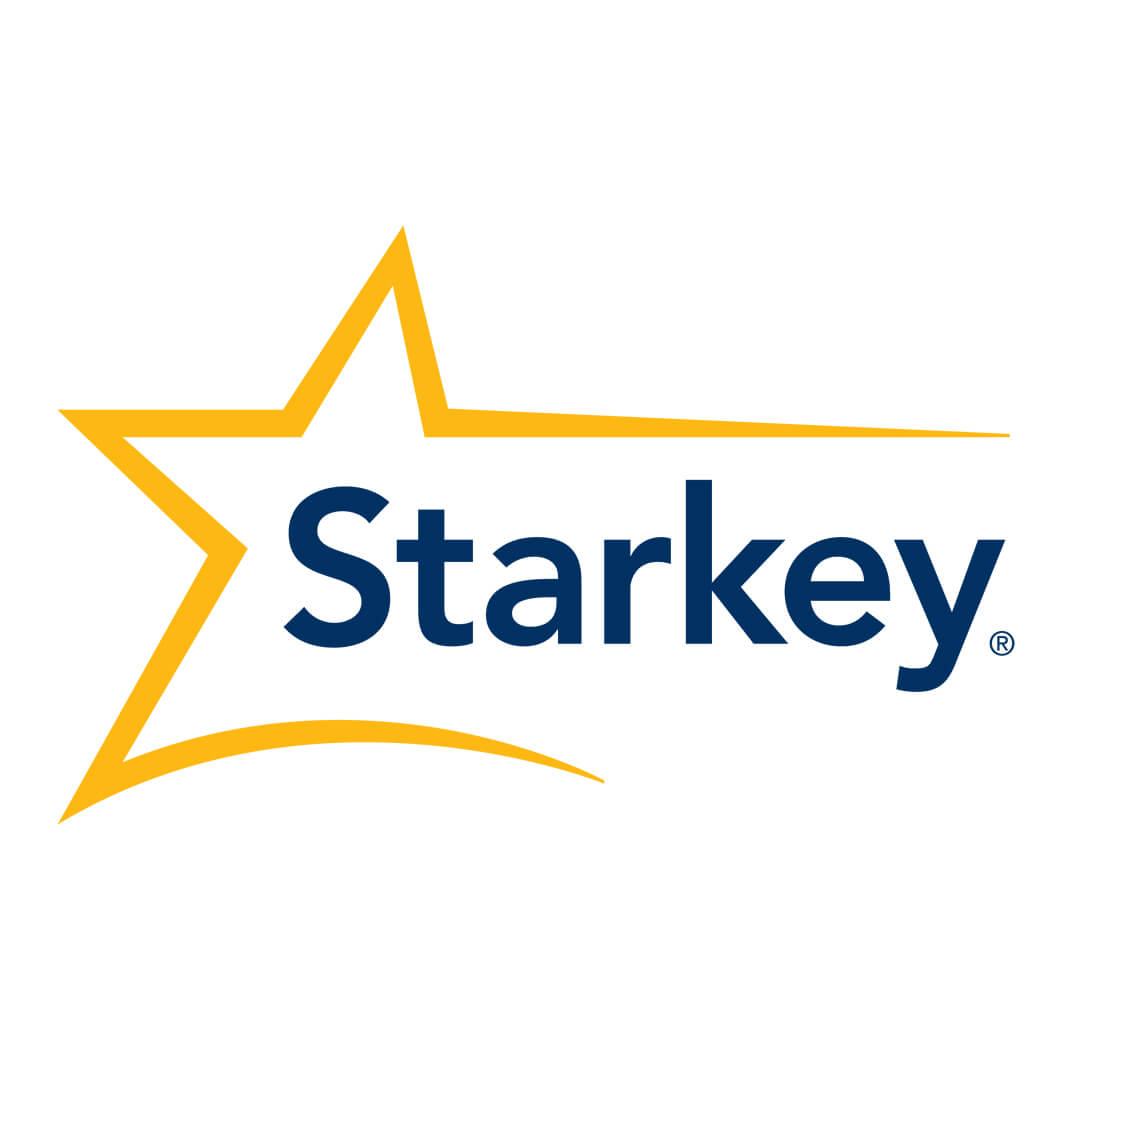 Starkey hearing aid logo